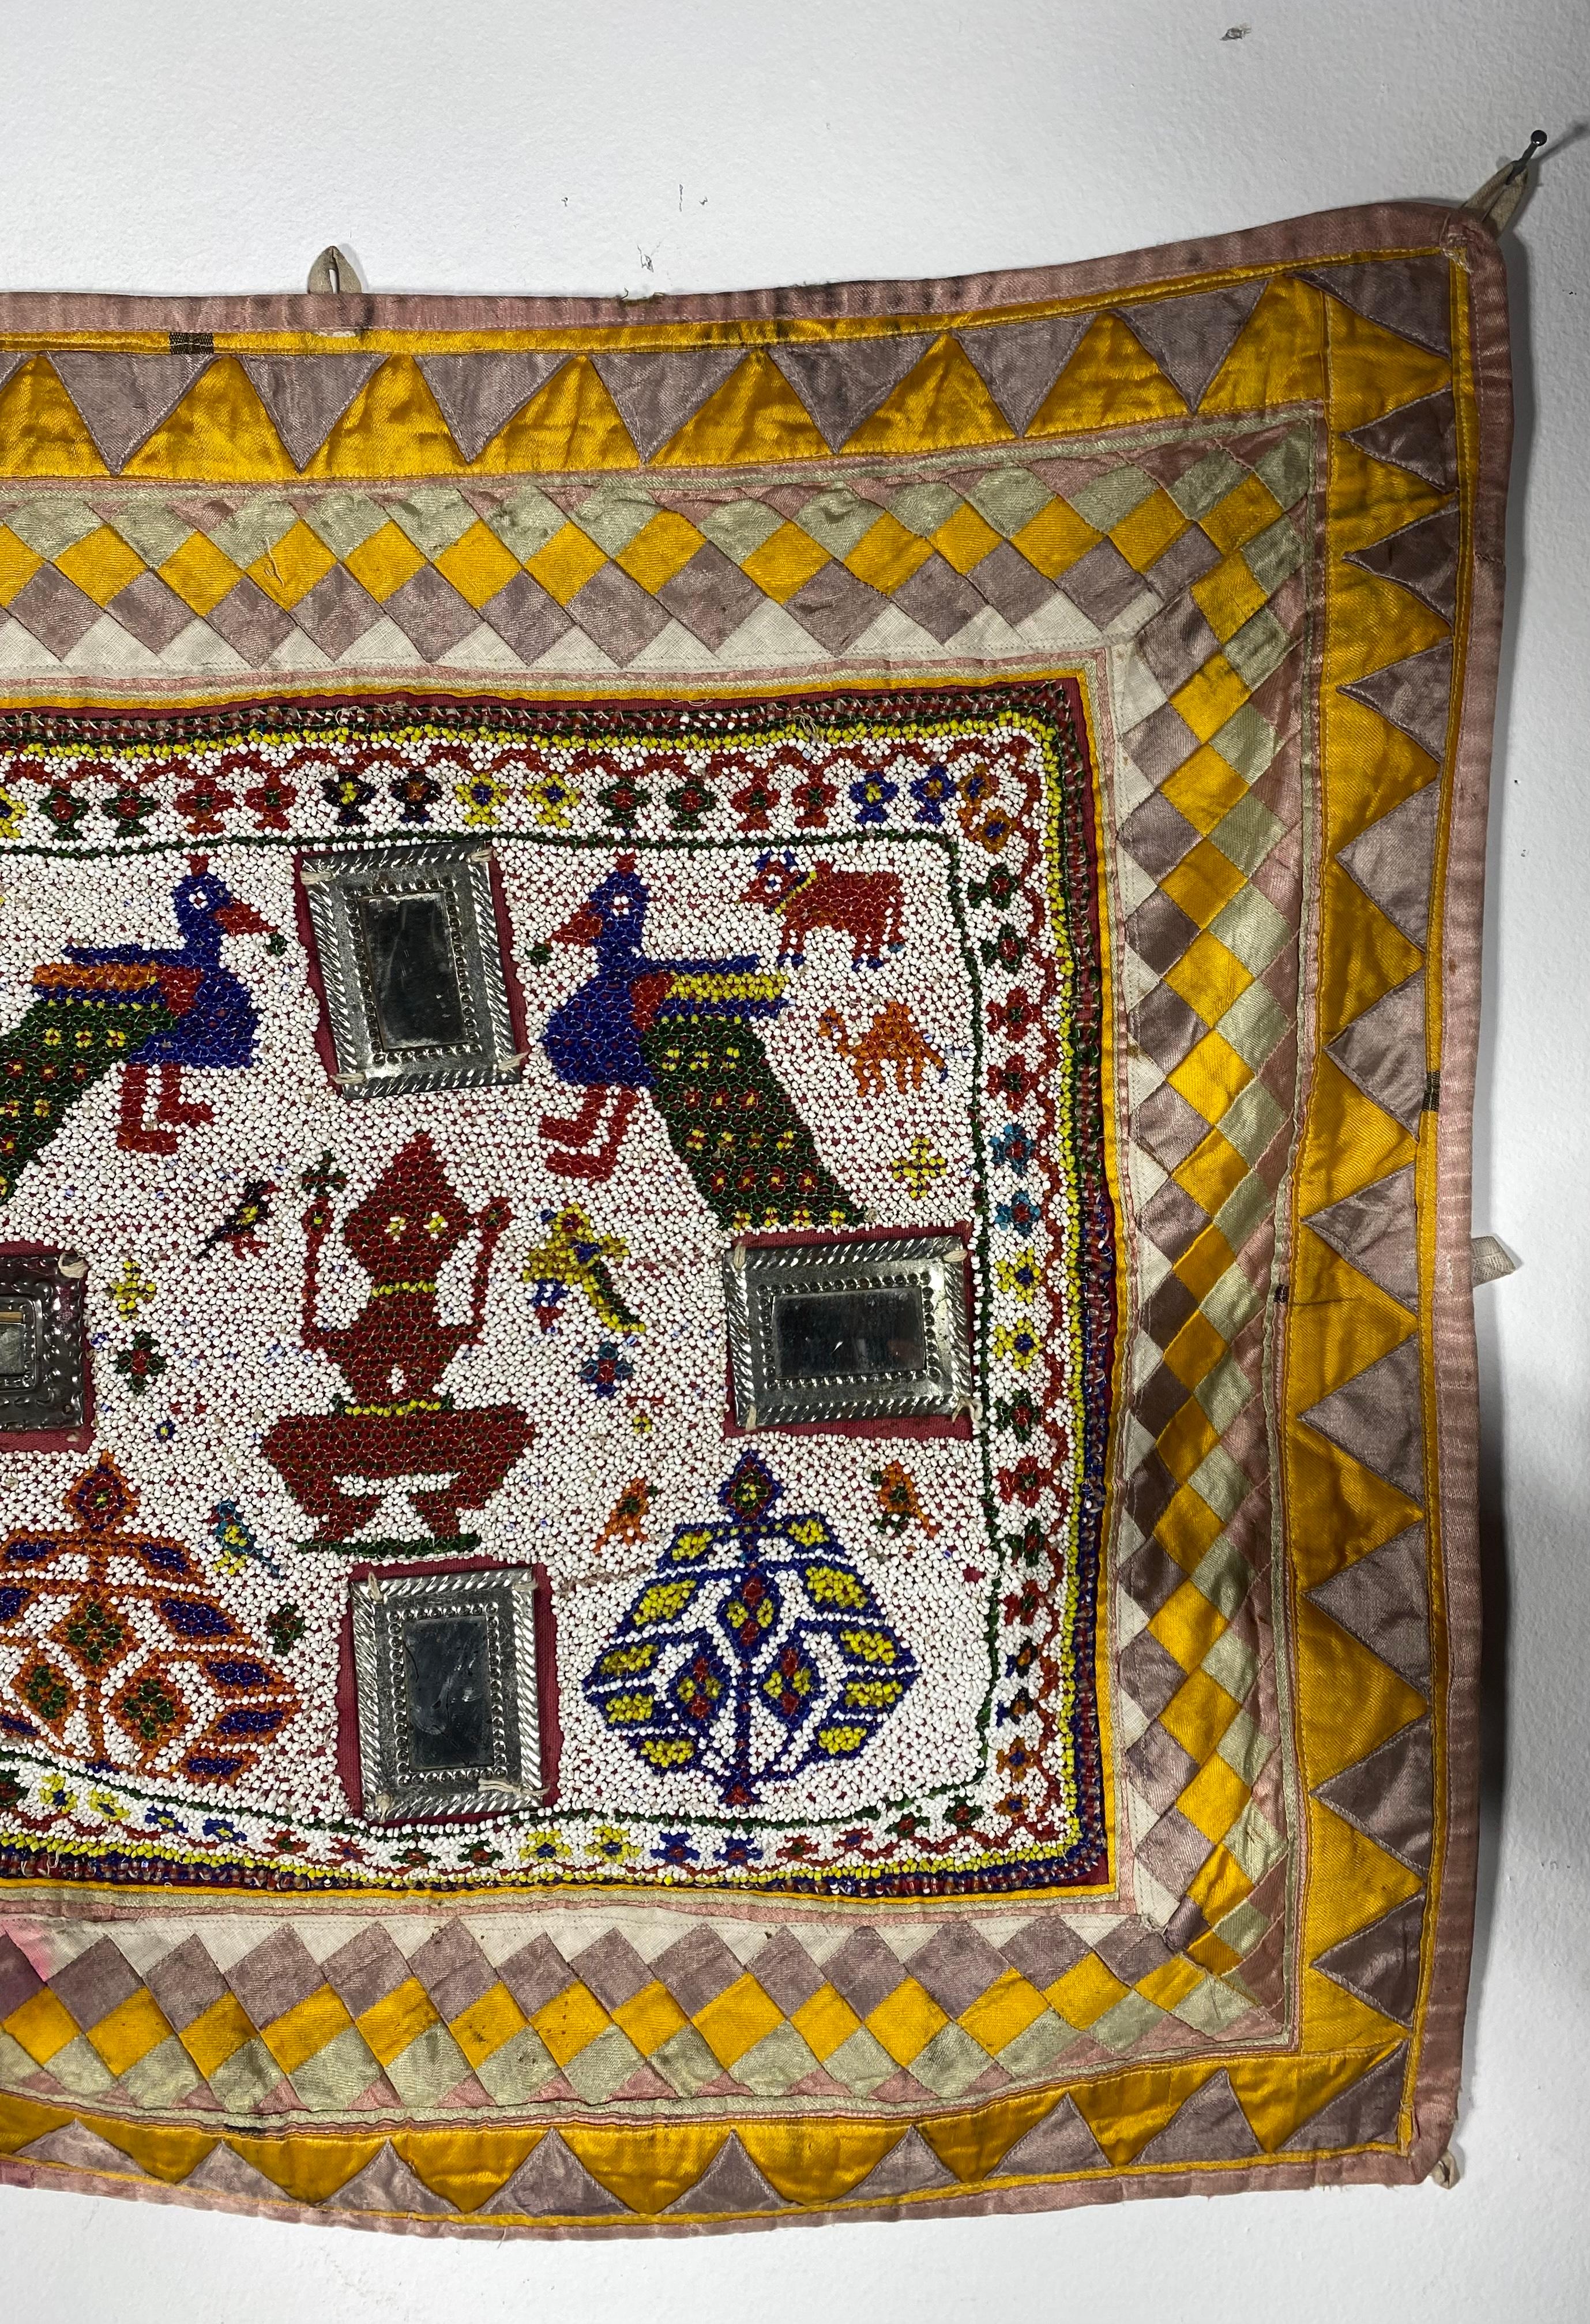 Perlen / Handbestickt  Chakla Cloth Gujarat Saurashta Textile aus Indien,, Wunderbar dekoriert... Komplizierte Perlenarbeit,, Ungewöhnliche angewandte Spiegel,, Einige durchbluten dis-Färbung (siehe Foto) Diese handgemachte und Hand Perlen Textil